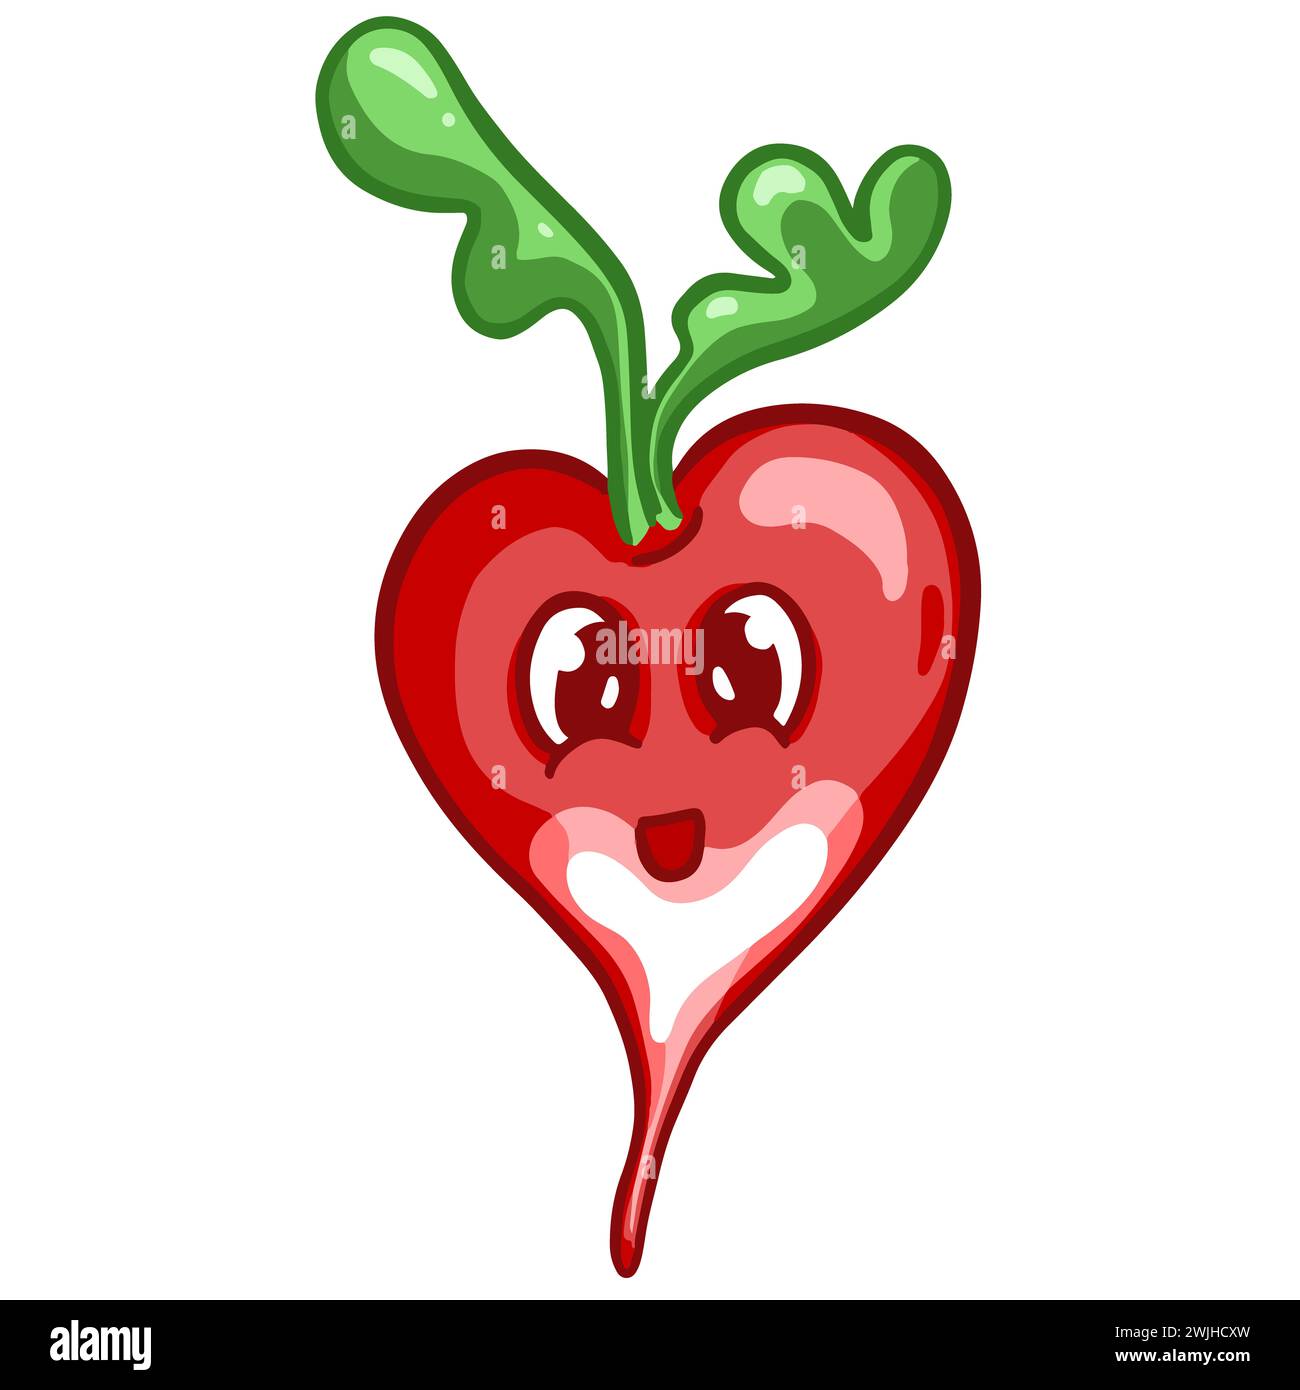 Personnage de radis végétal de dessin animé avec illustration de visage de Smiley Kawaii Banque D'Images